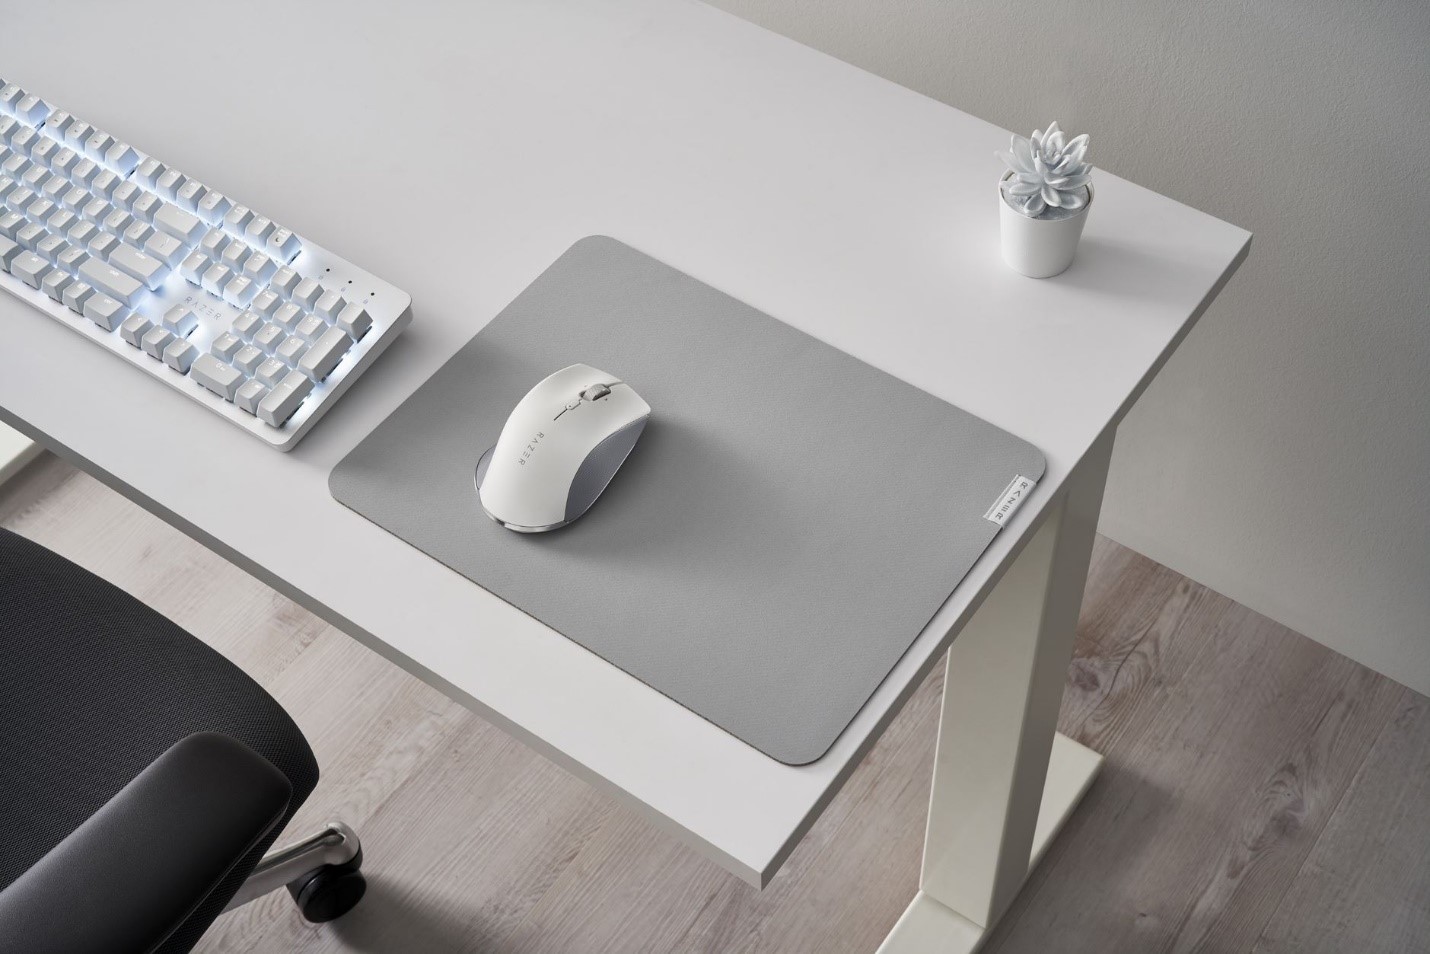 Razer anunció la siguiente generación de productividad en el espacio de trabajo con el Set Razer de Productividad. El nuevo mouse Pro Click